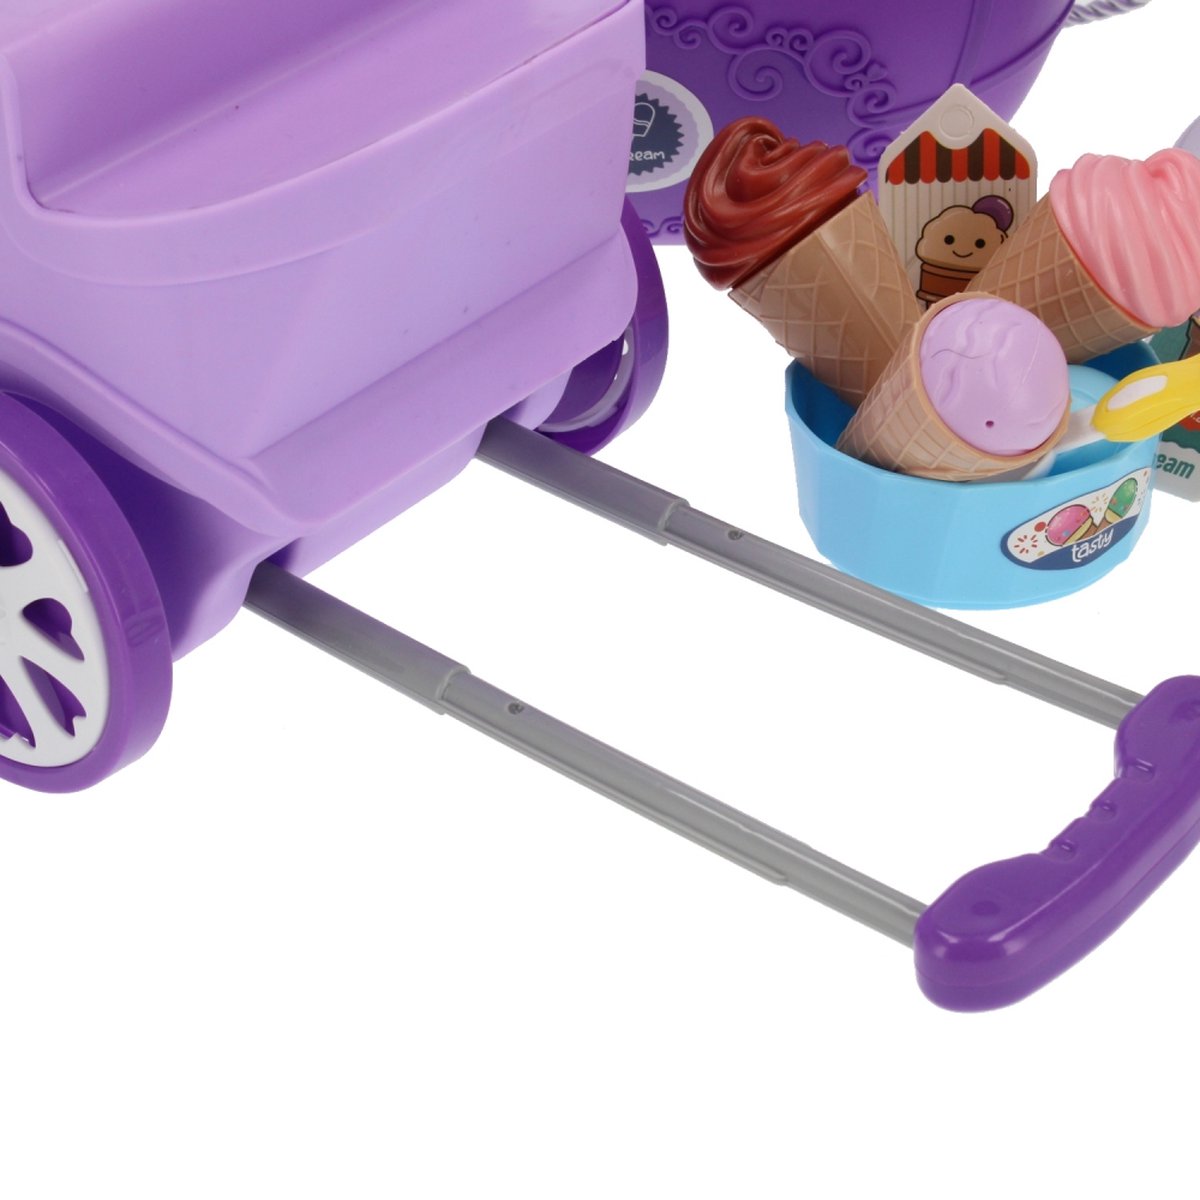 Ariko Speelgoed trolley Ijssalon wagen winkel 69 delig - Softijs, italiaans ijs, servies, hoorntje en nog veel meer - handige meeneem koffer met wieltjes